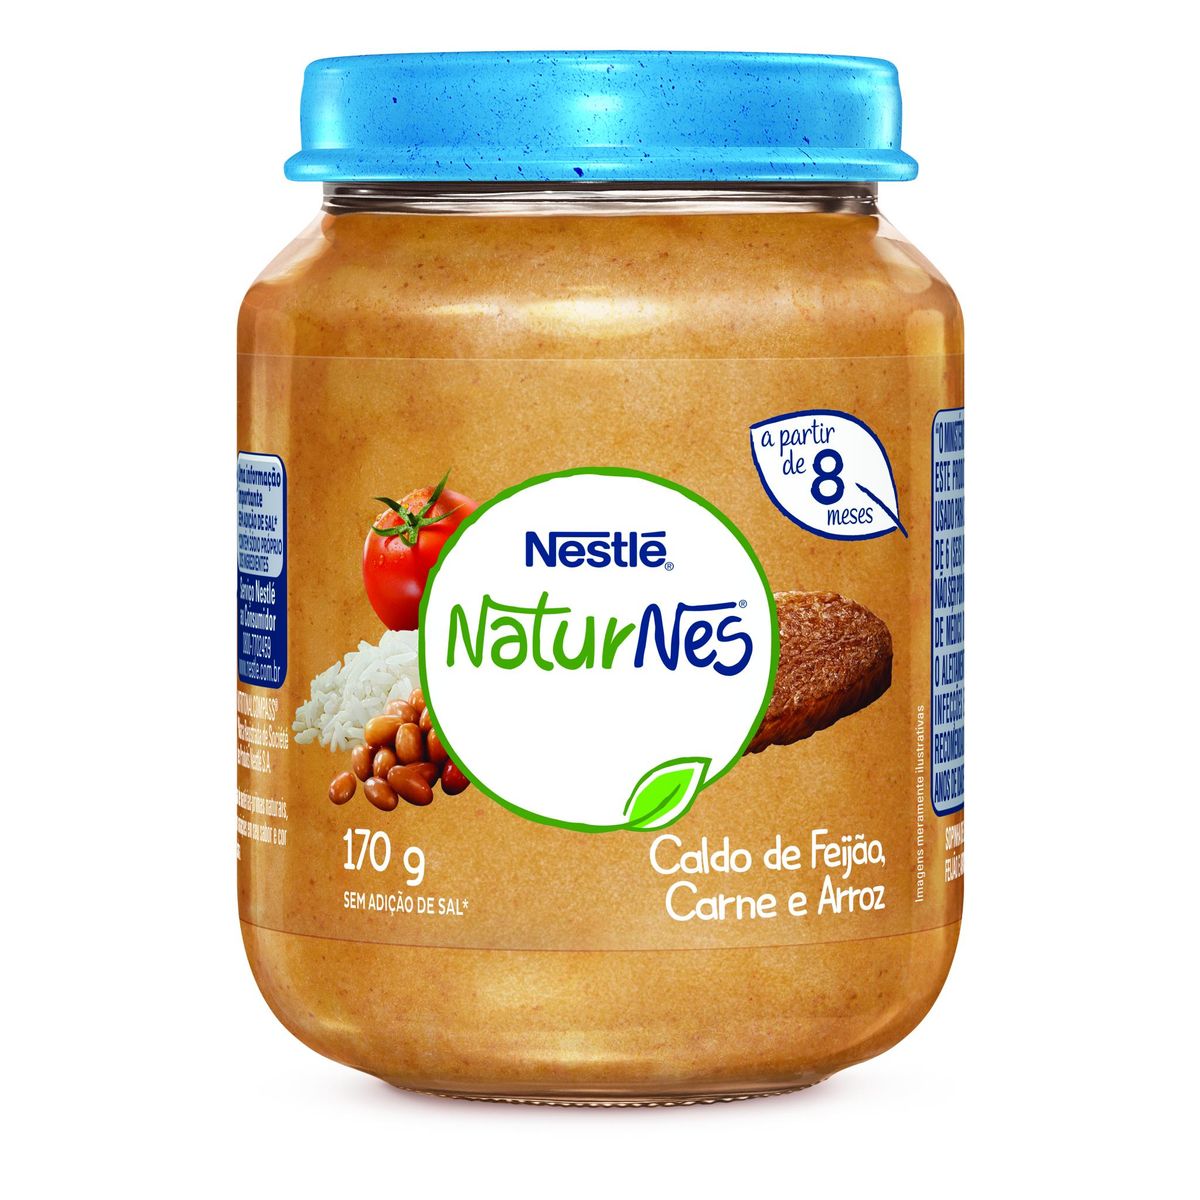 Papinha Nestlé Naturnes Caldo de Feijão, Carne e Arroz 170g